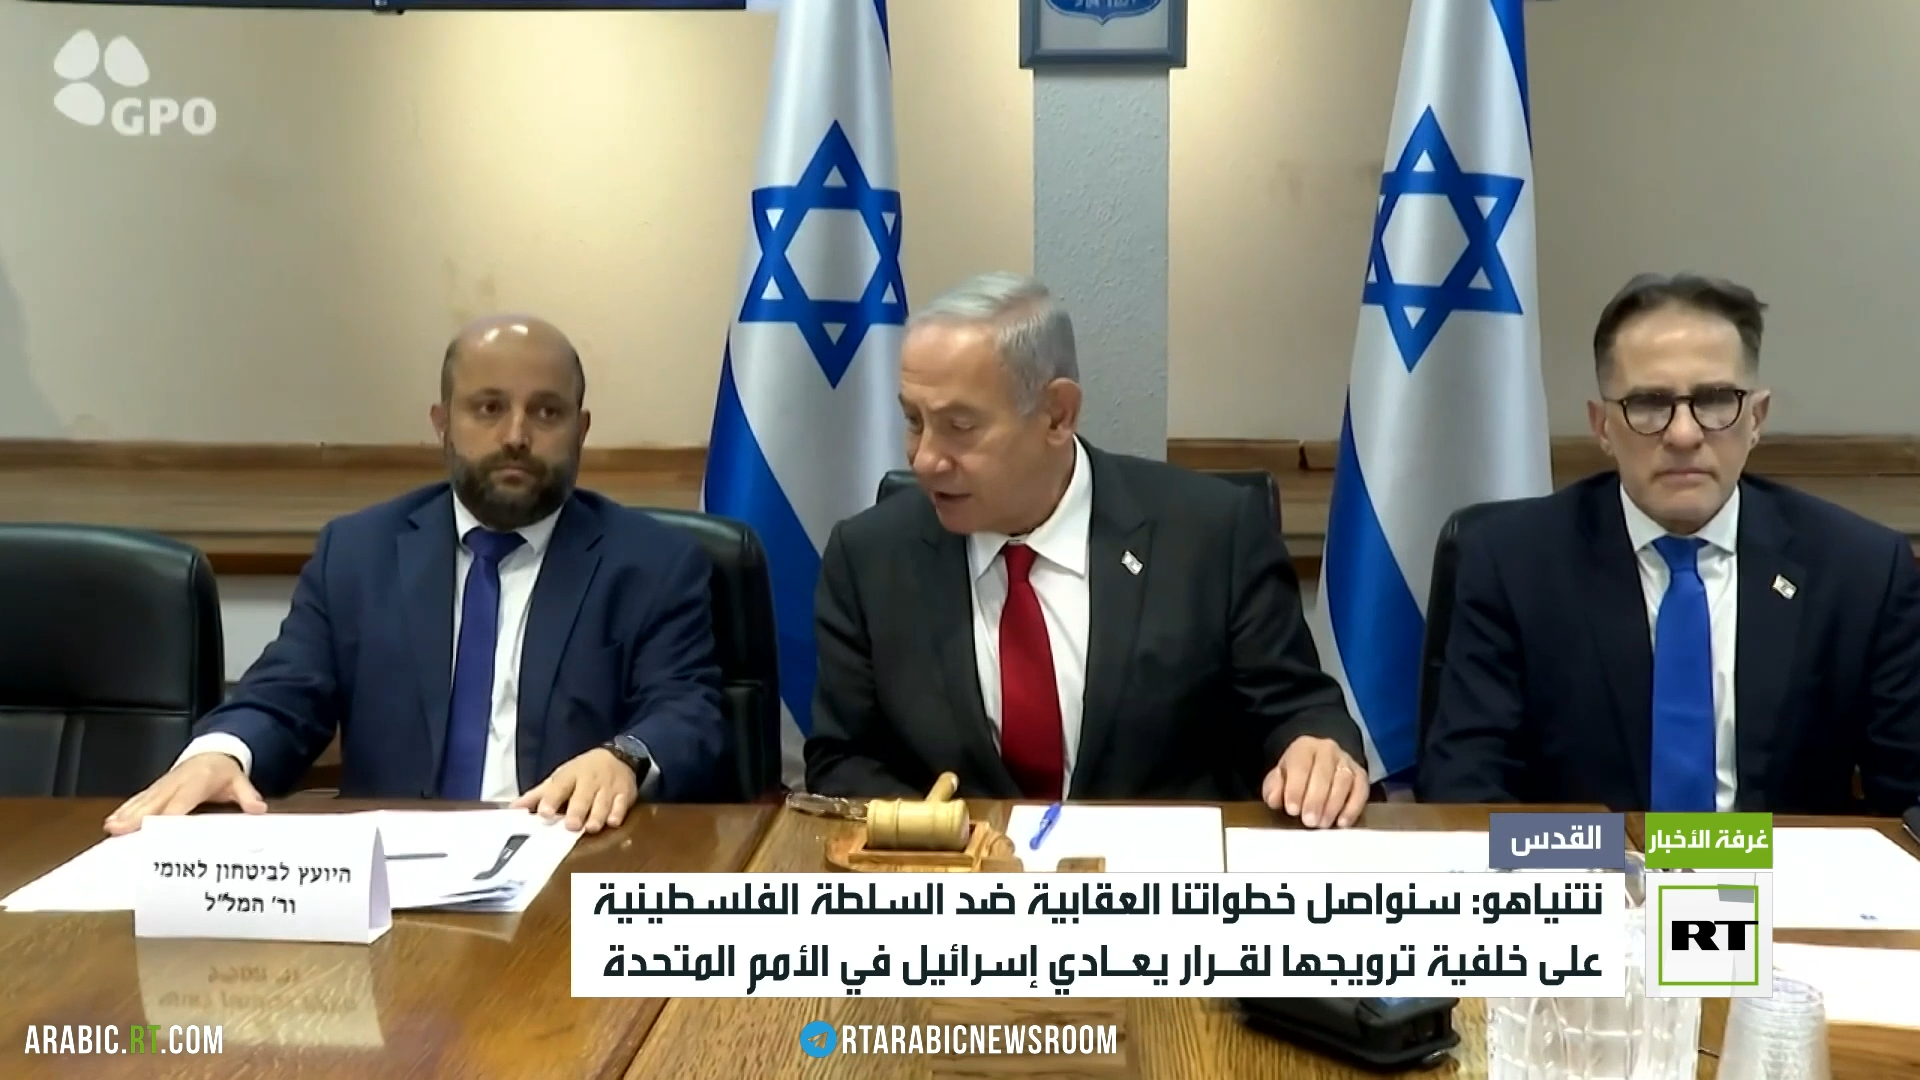 نتنياهو: سنواصل خطواتنا العقابية ضد السلطة الفلسطينية